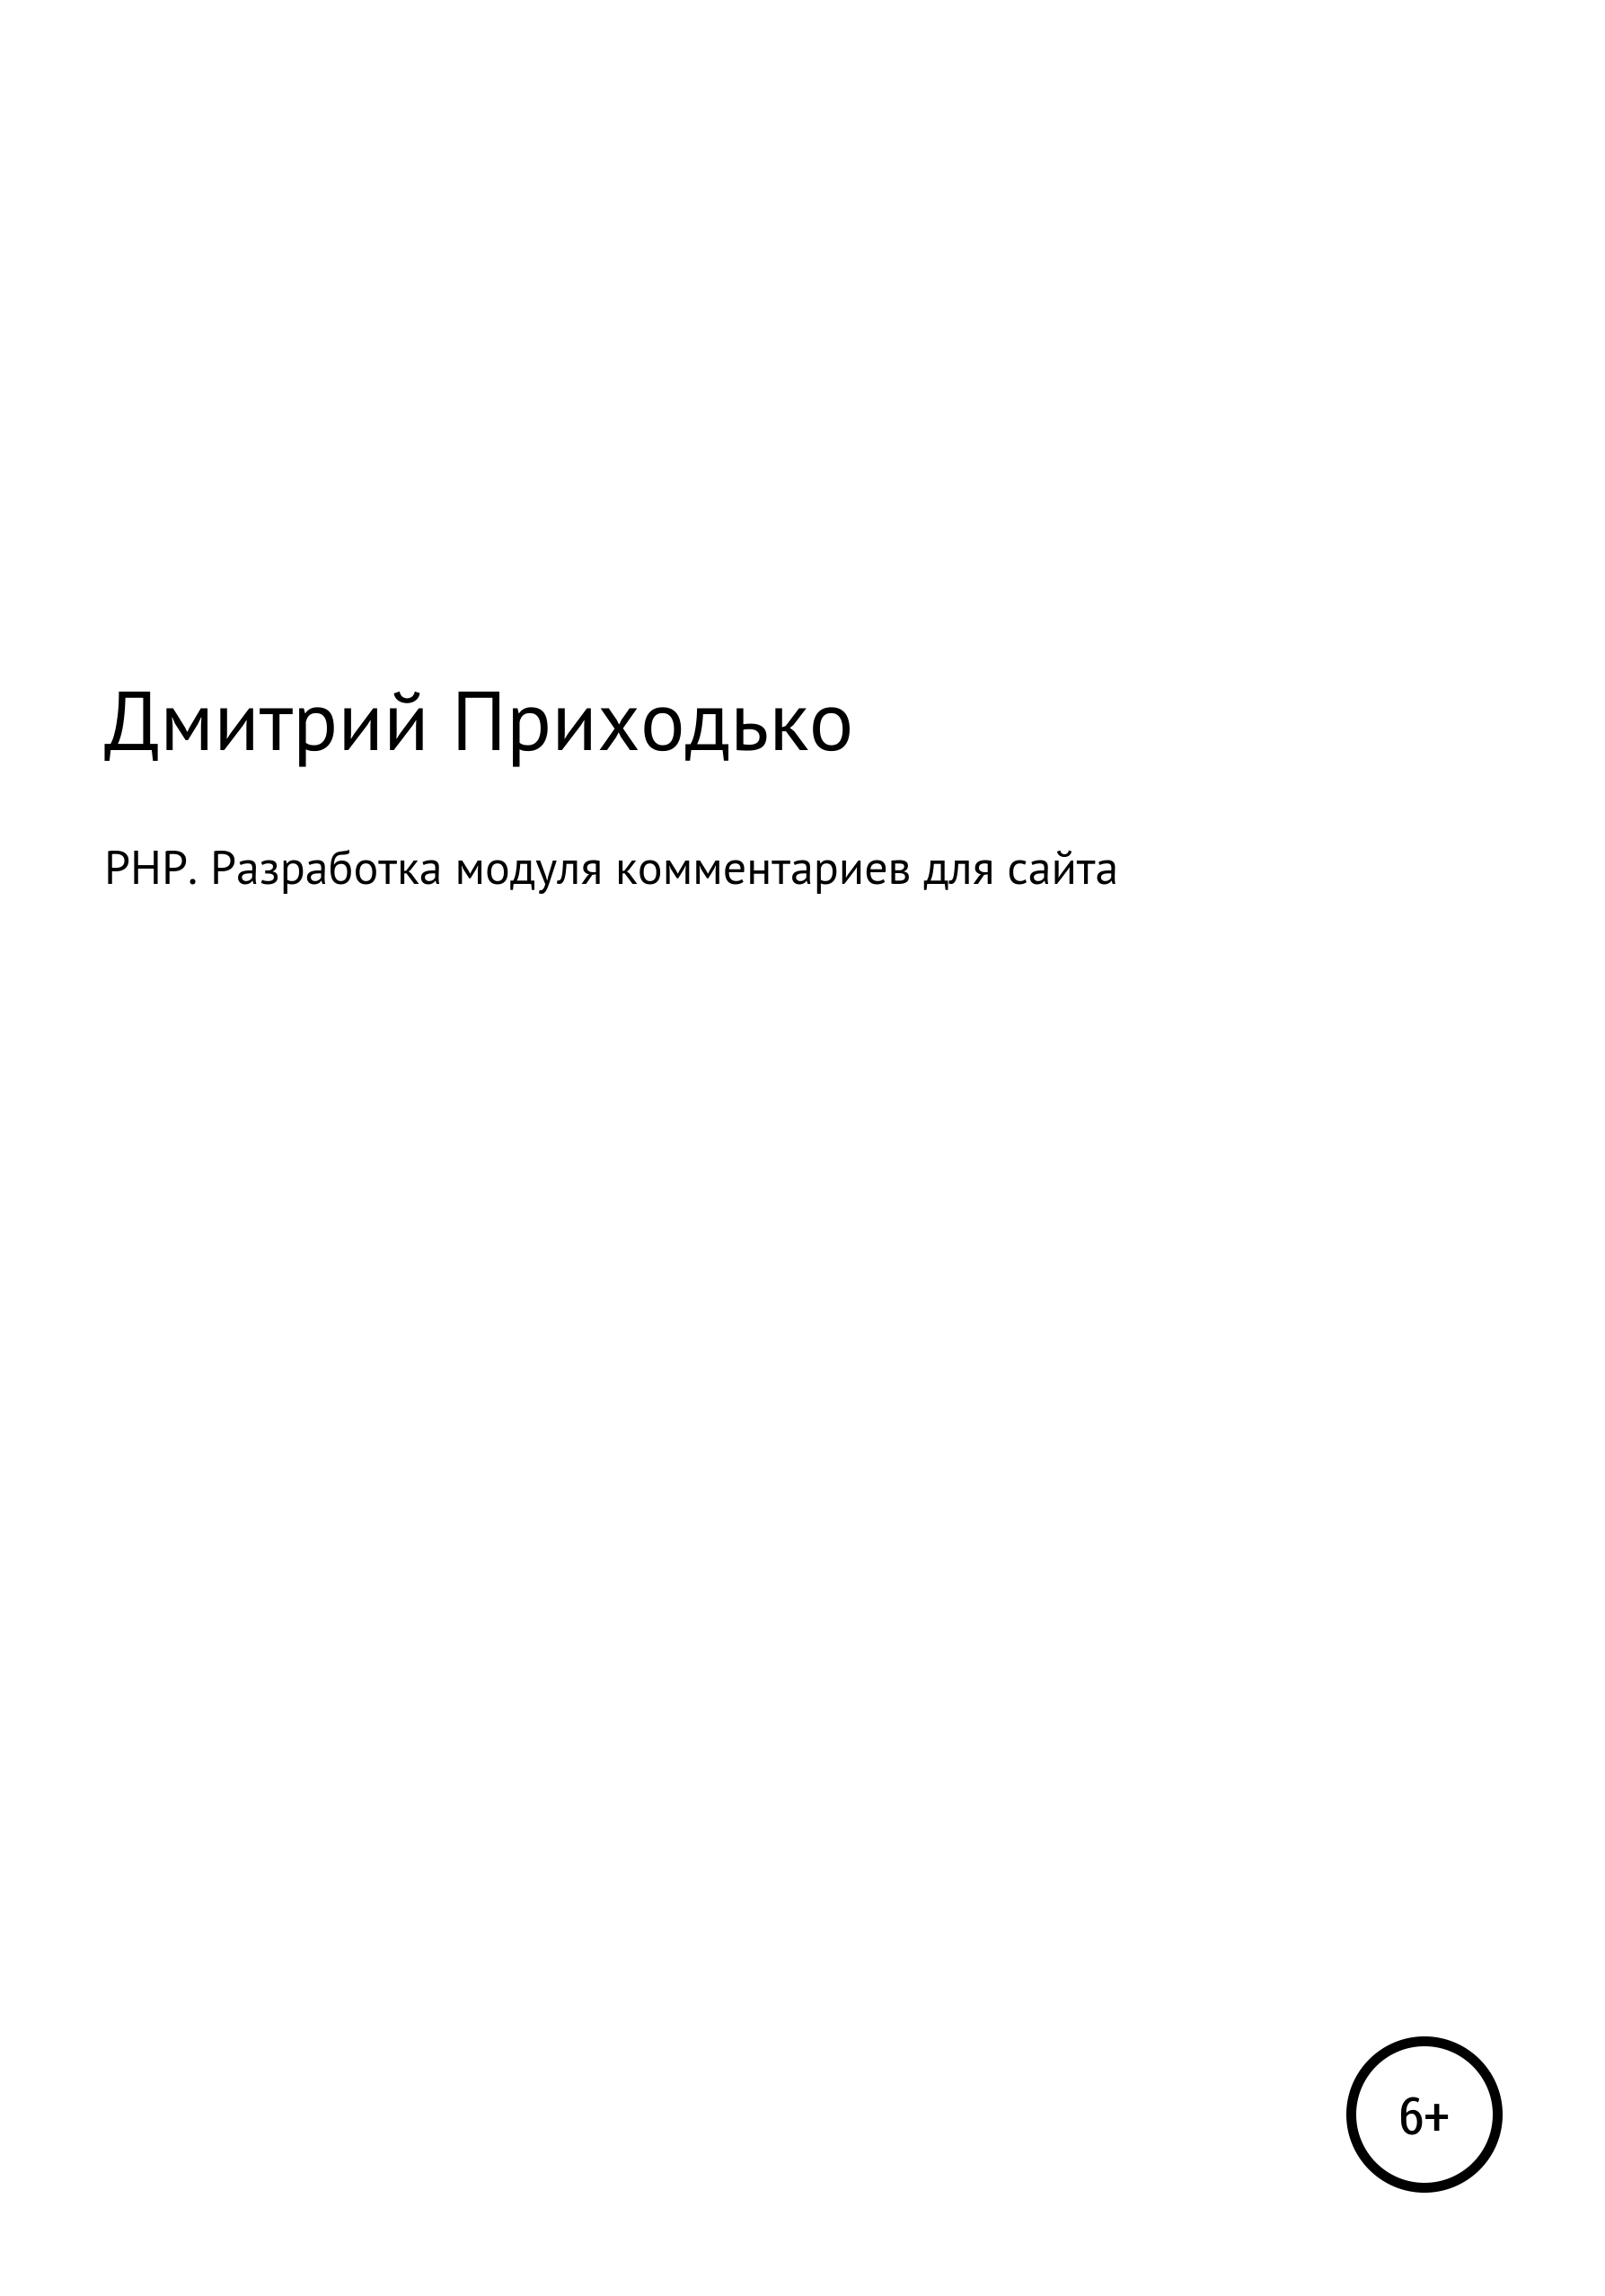 Книга  PHP. Разработка модуля комментариев для сайта созданная Дмитрий Приходько может относится к жанру книги о компьютерах, программирование. Стоимость электронной книги PHP. Разработка модуля комментариев для сайта с идентификатором 67276092 составляет  руб.